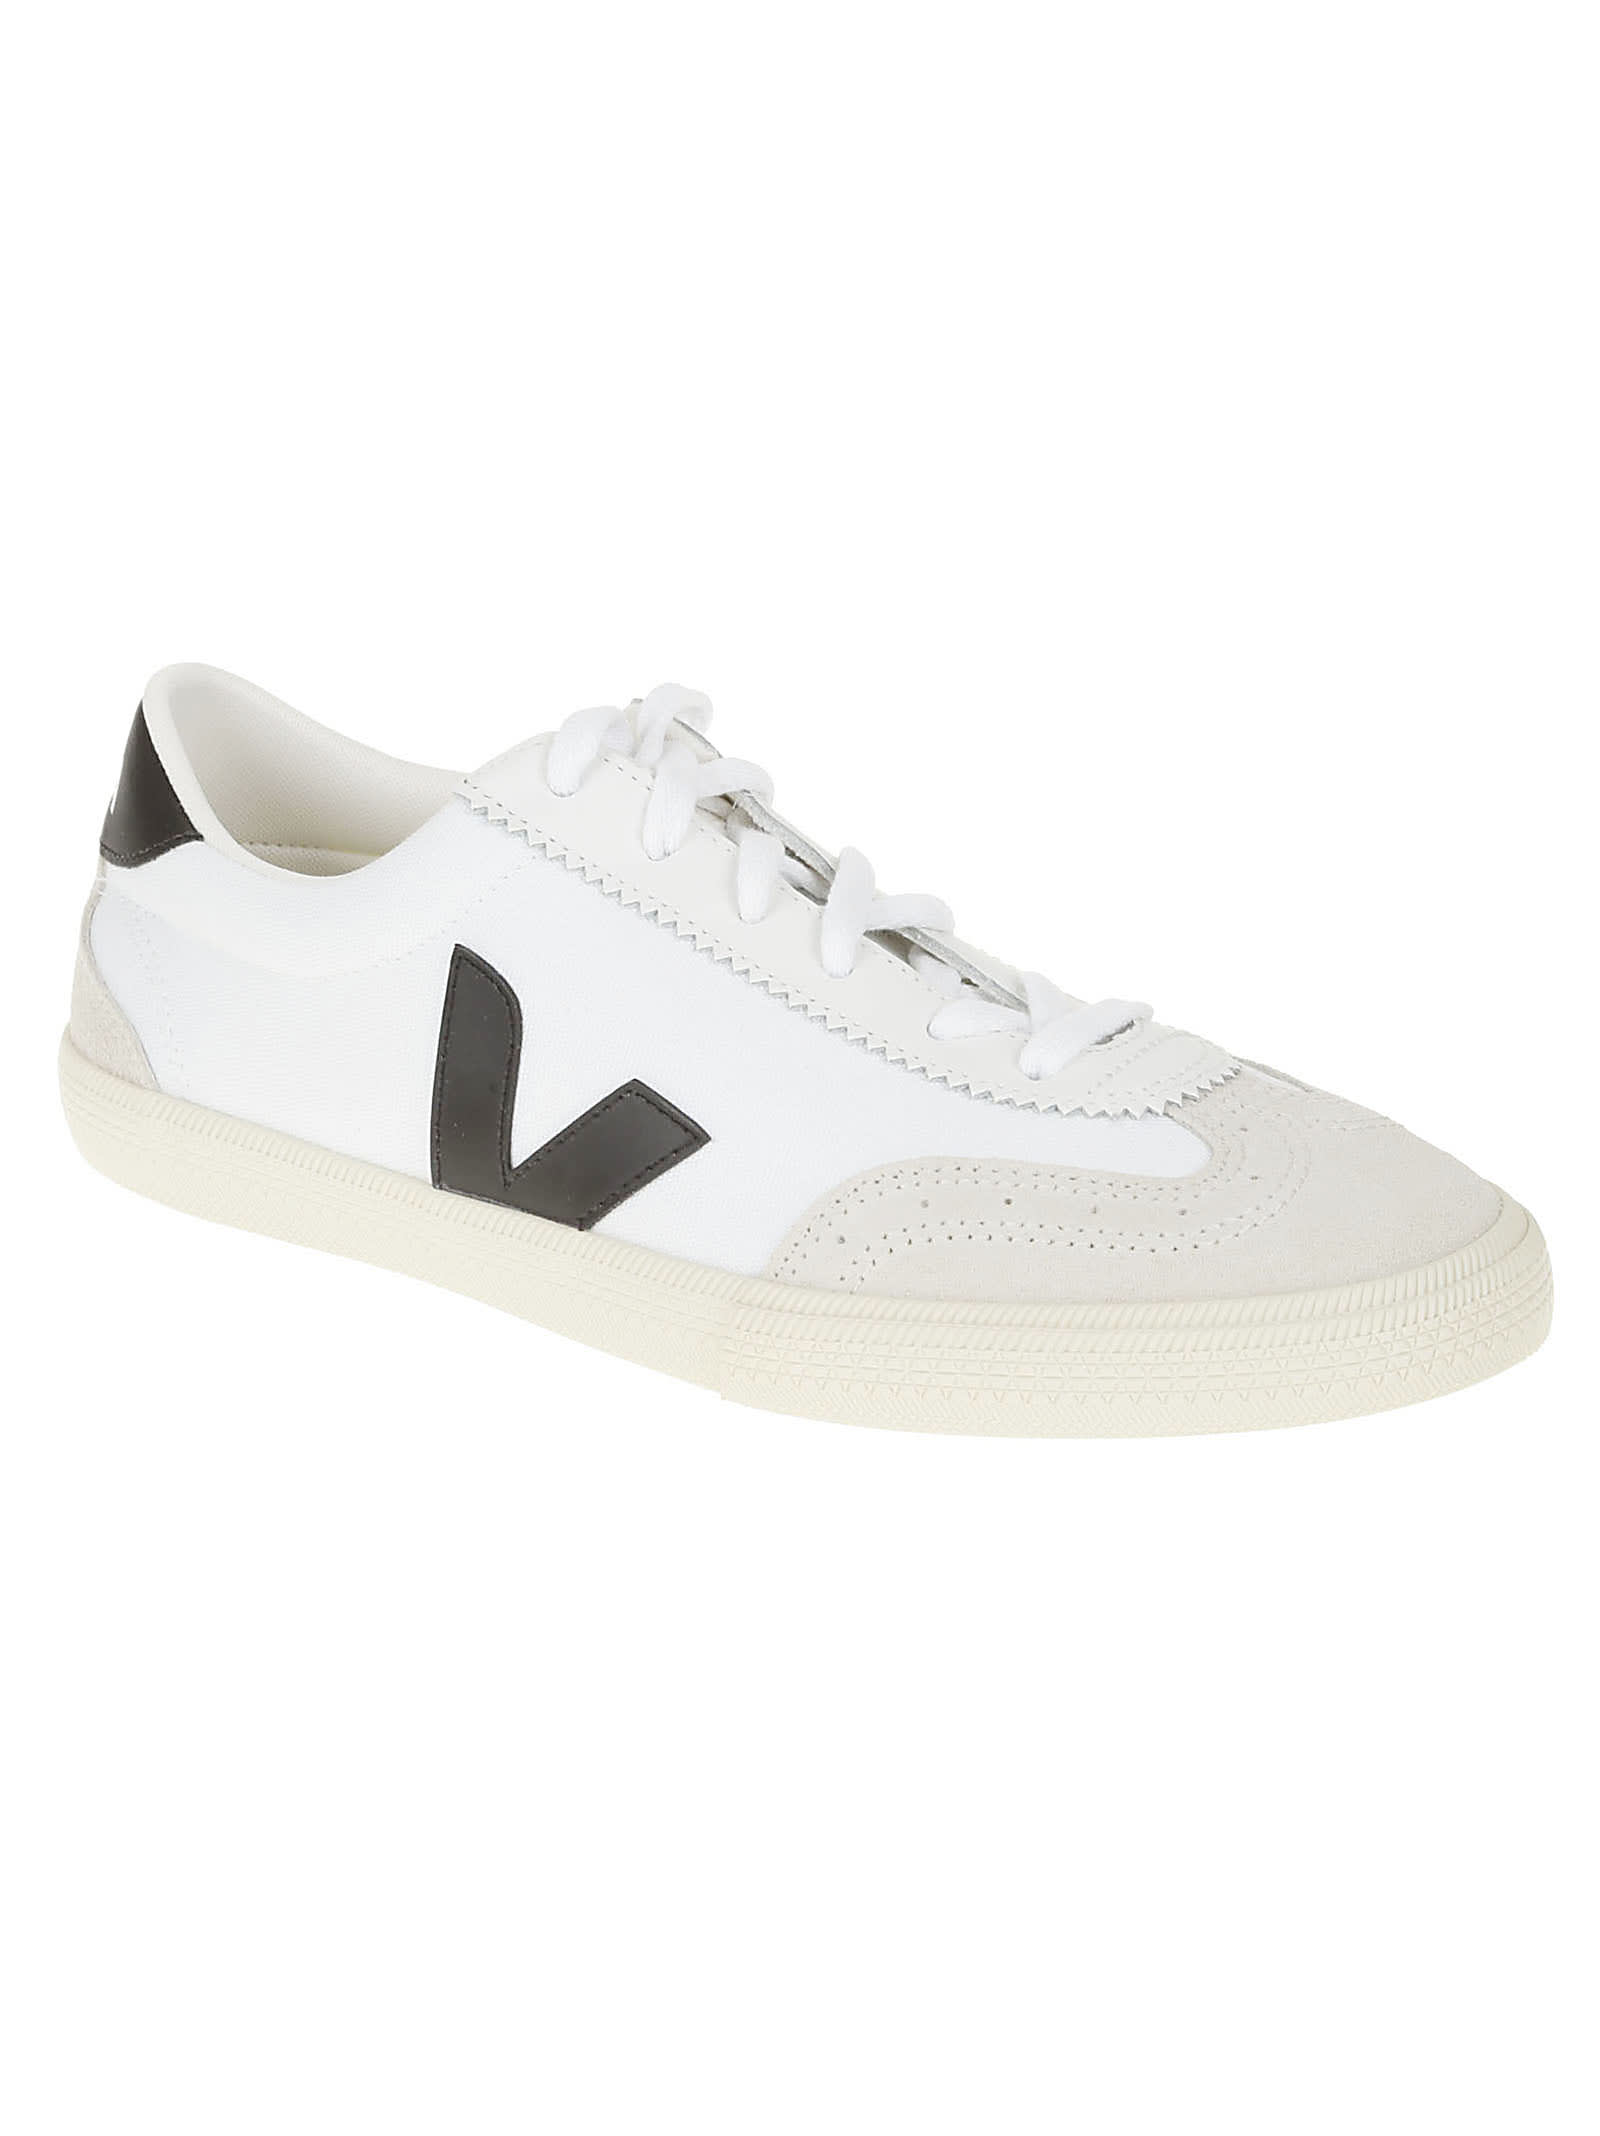 Shop Veja Side Logo Sneakers In White/black